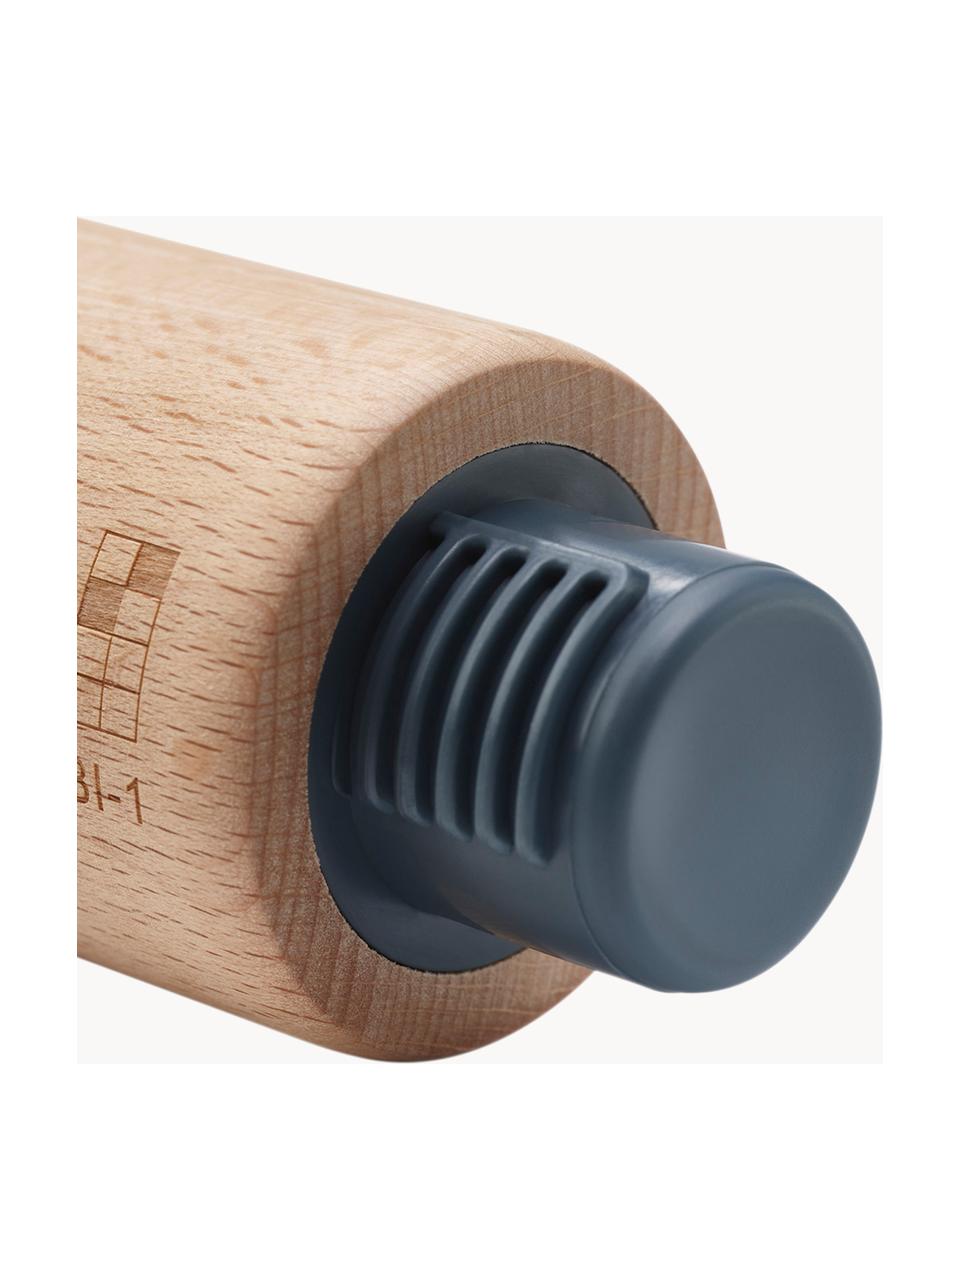 Nudelholz Precision Pin aus Buchenholz, Buchenholz, Kunststoff, Buchenholz, B 6 x L 42 cm